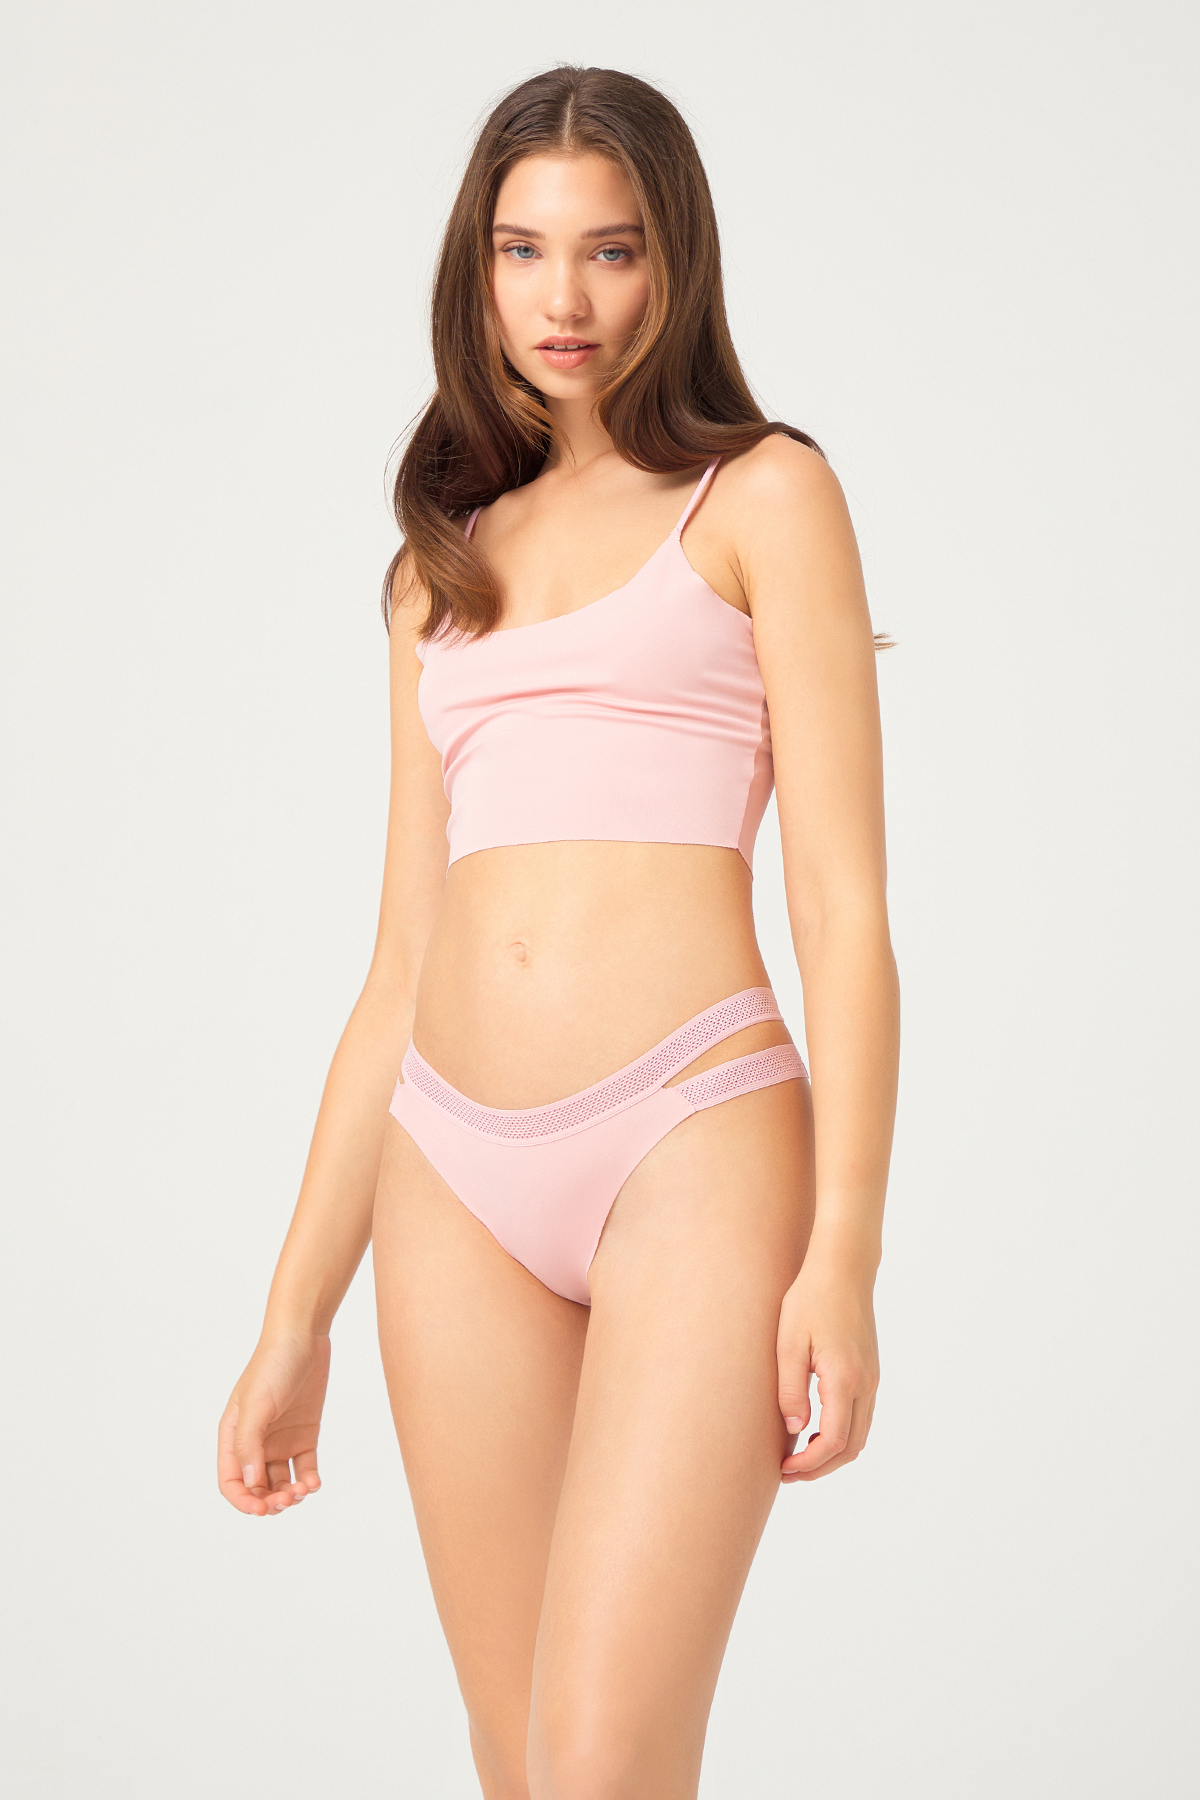 laser-cut-seamless-brazilian-women-panty-with-double-net-designed-waistband-ch5501-p-yesIlI-1-1